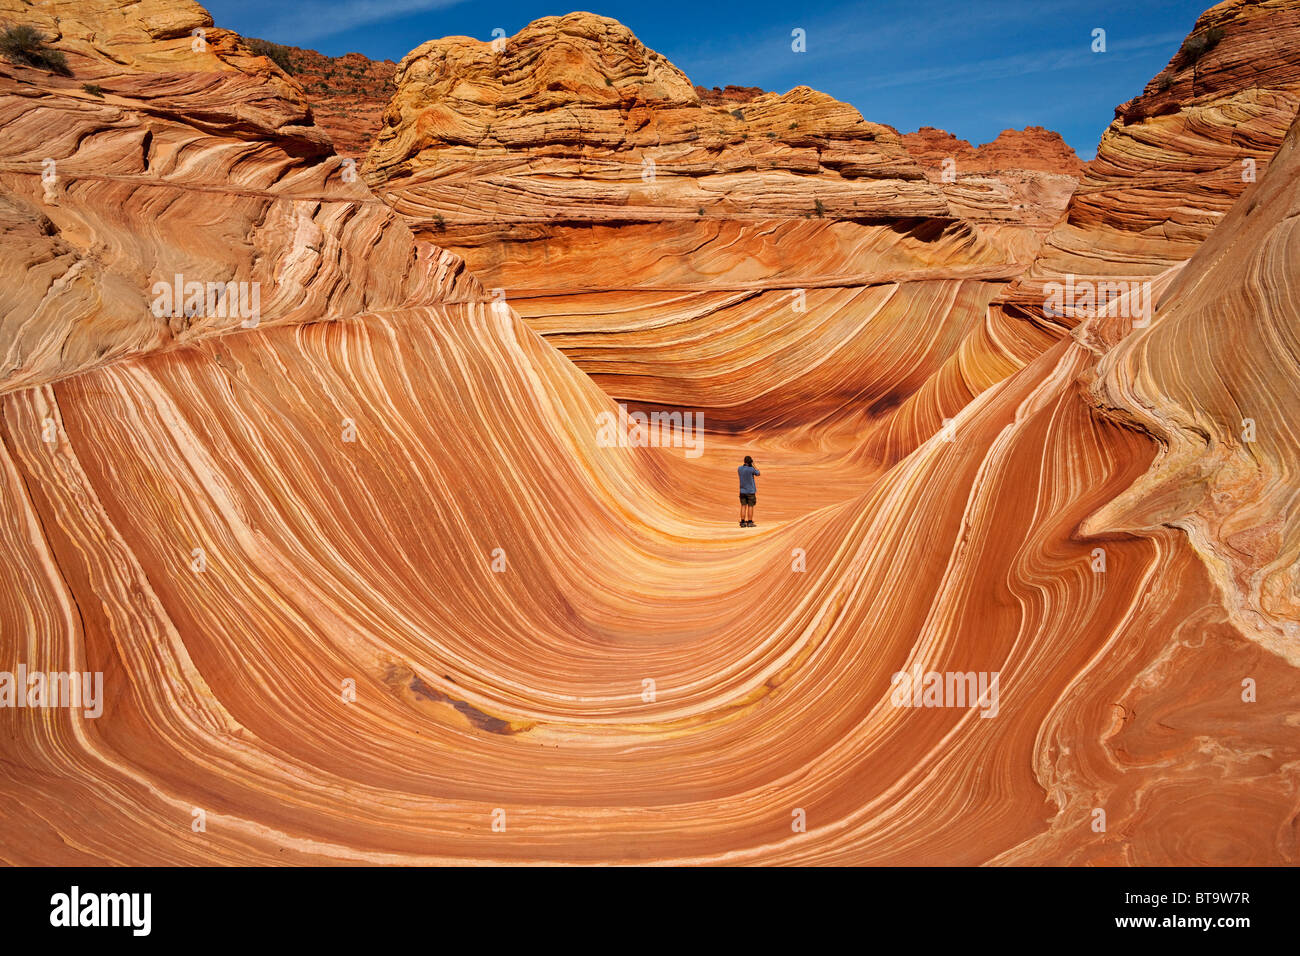 Turista en la onda, formación rocosa de Coyote Buttes North, Paria Canyon-Vermilion Cliffs Wilderness, Utah, Arizona, EE.UU. Foto de stock